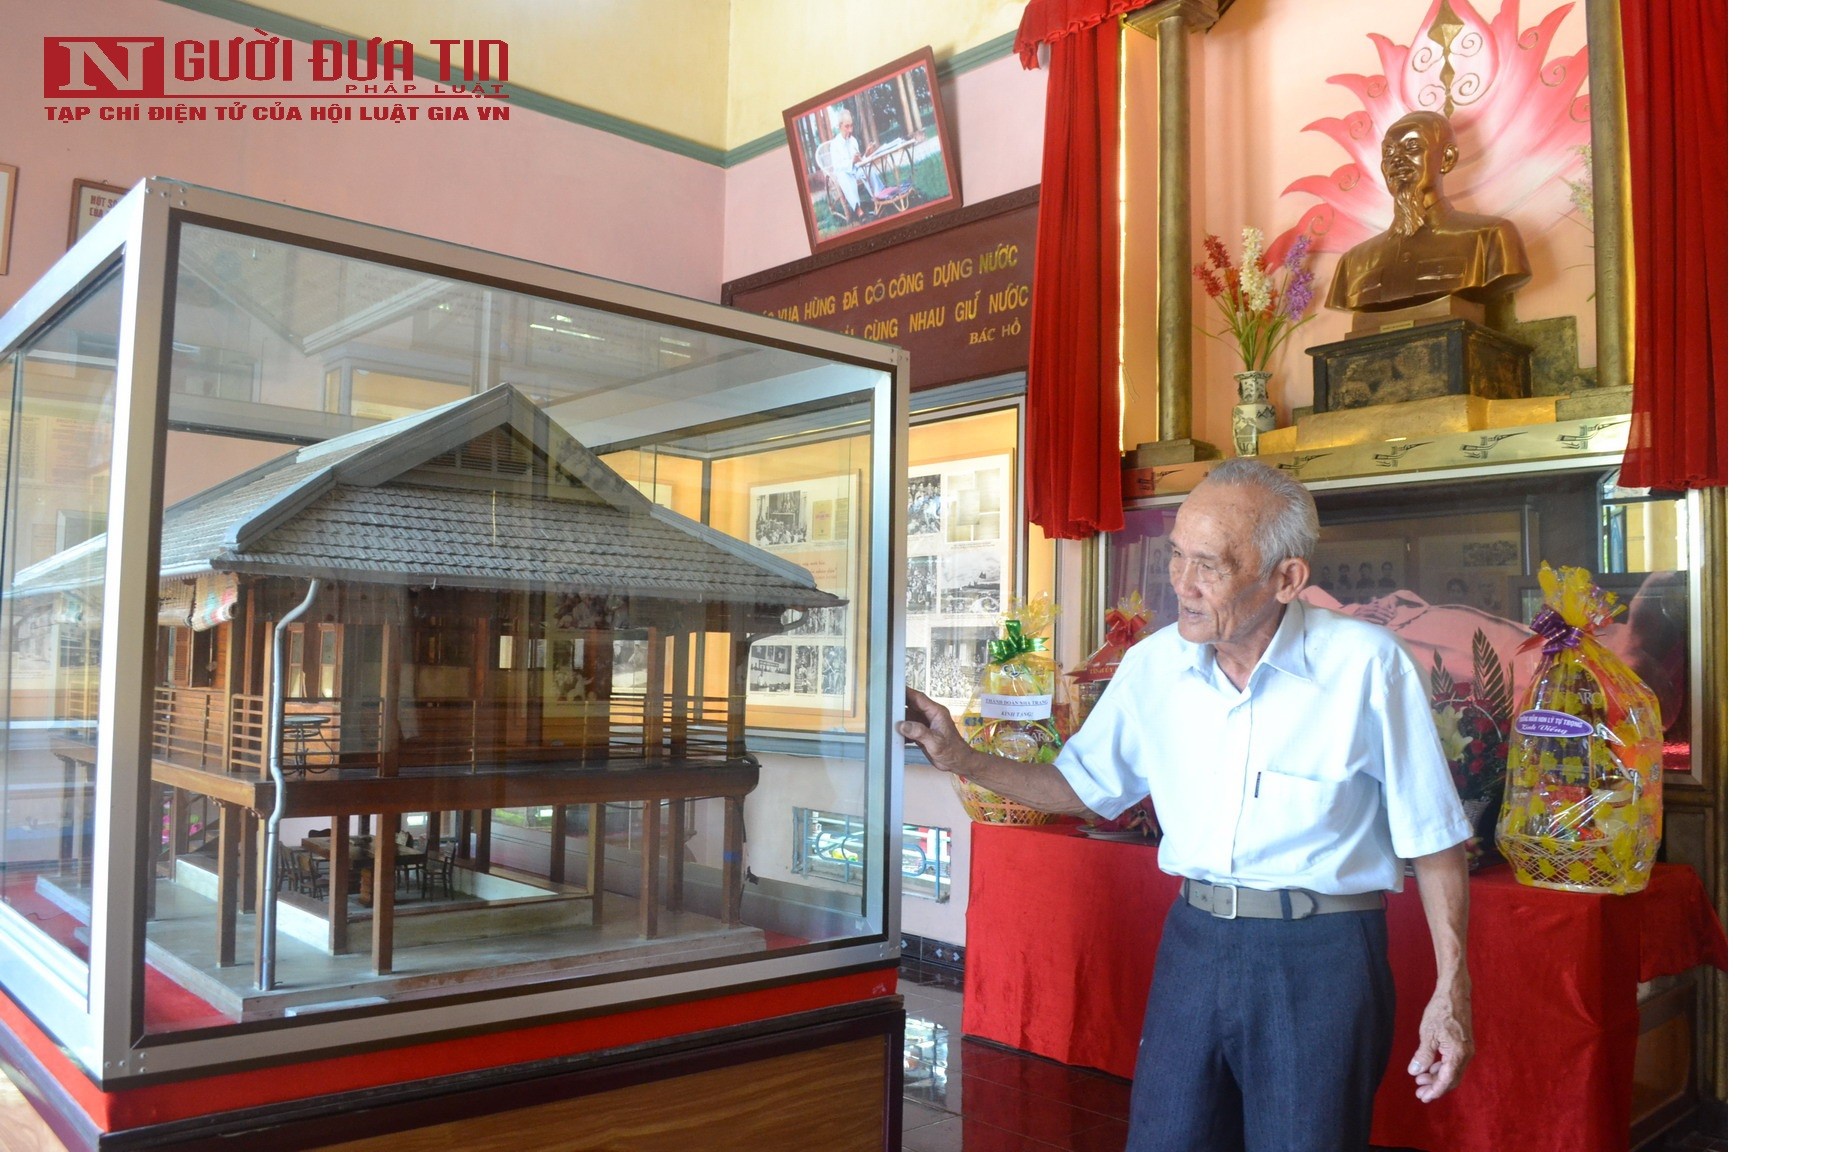 Văn hoá - Đến thăm “Bảo tàng Hồ Chí Minh thu nhỏ” giữa lòng phố biển Nha Trang (Hình 3).